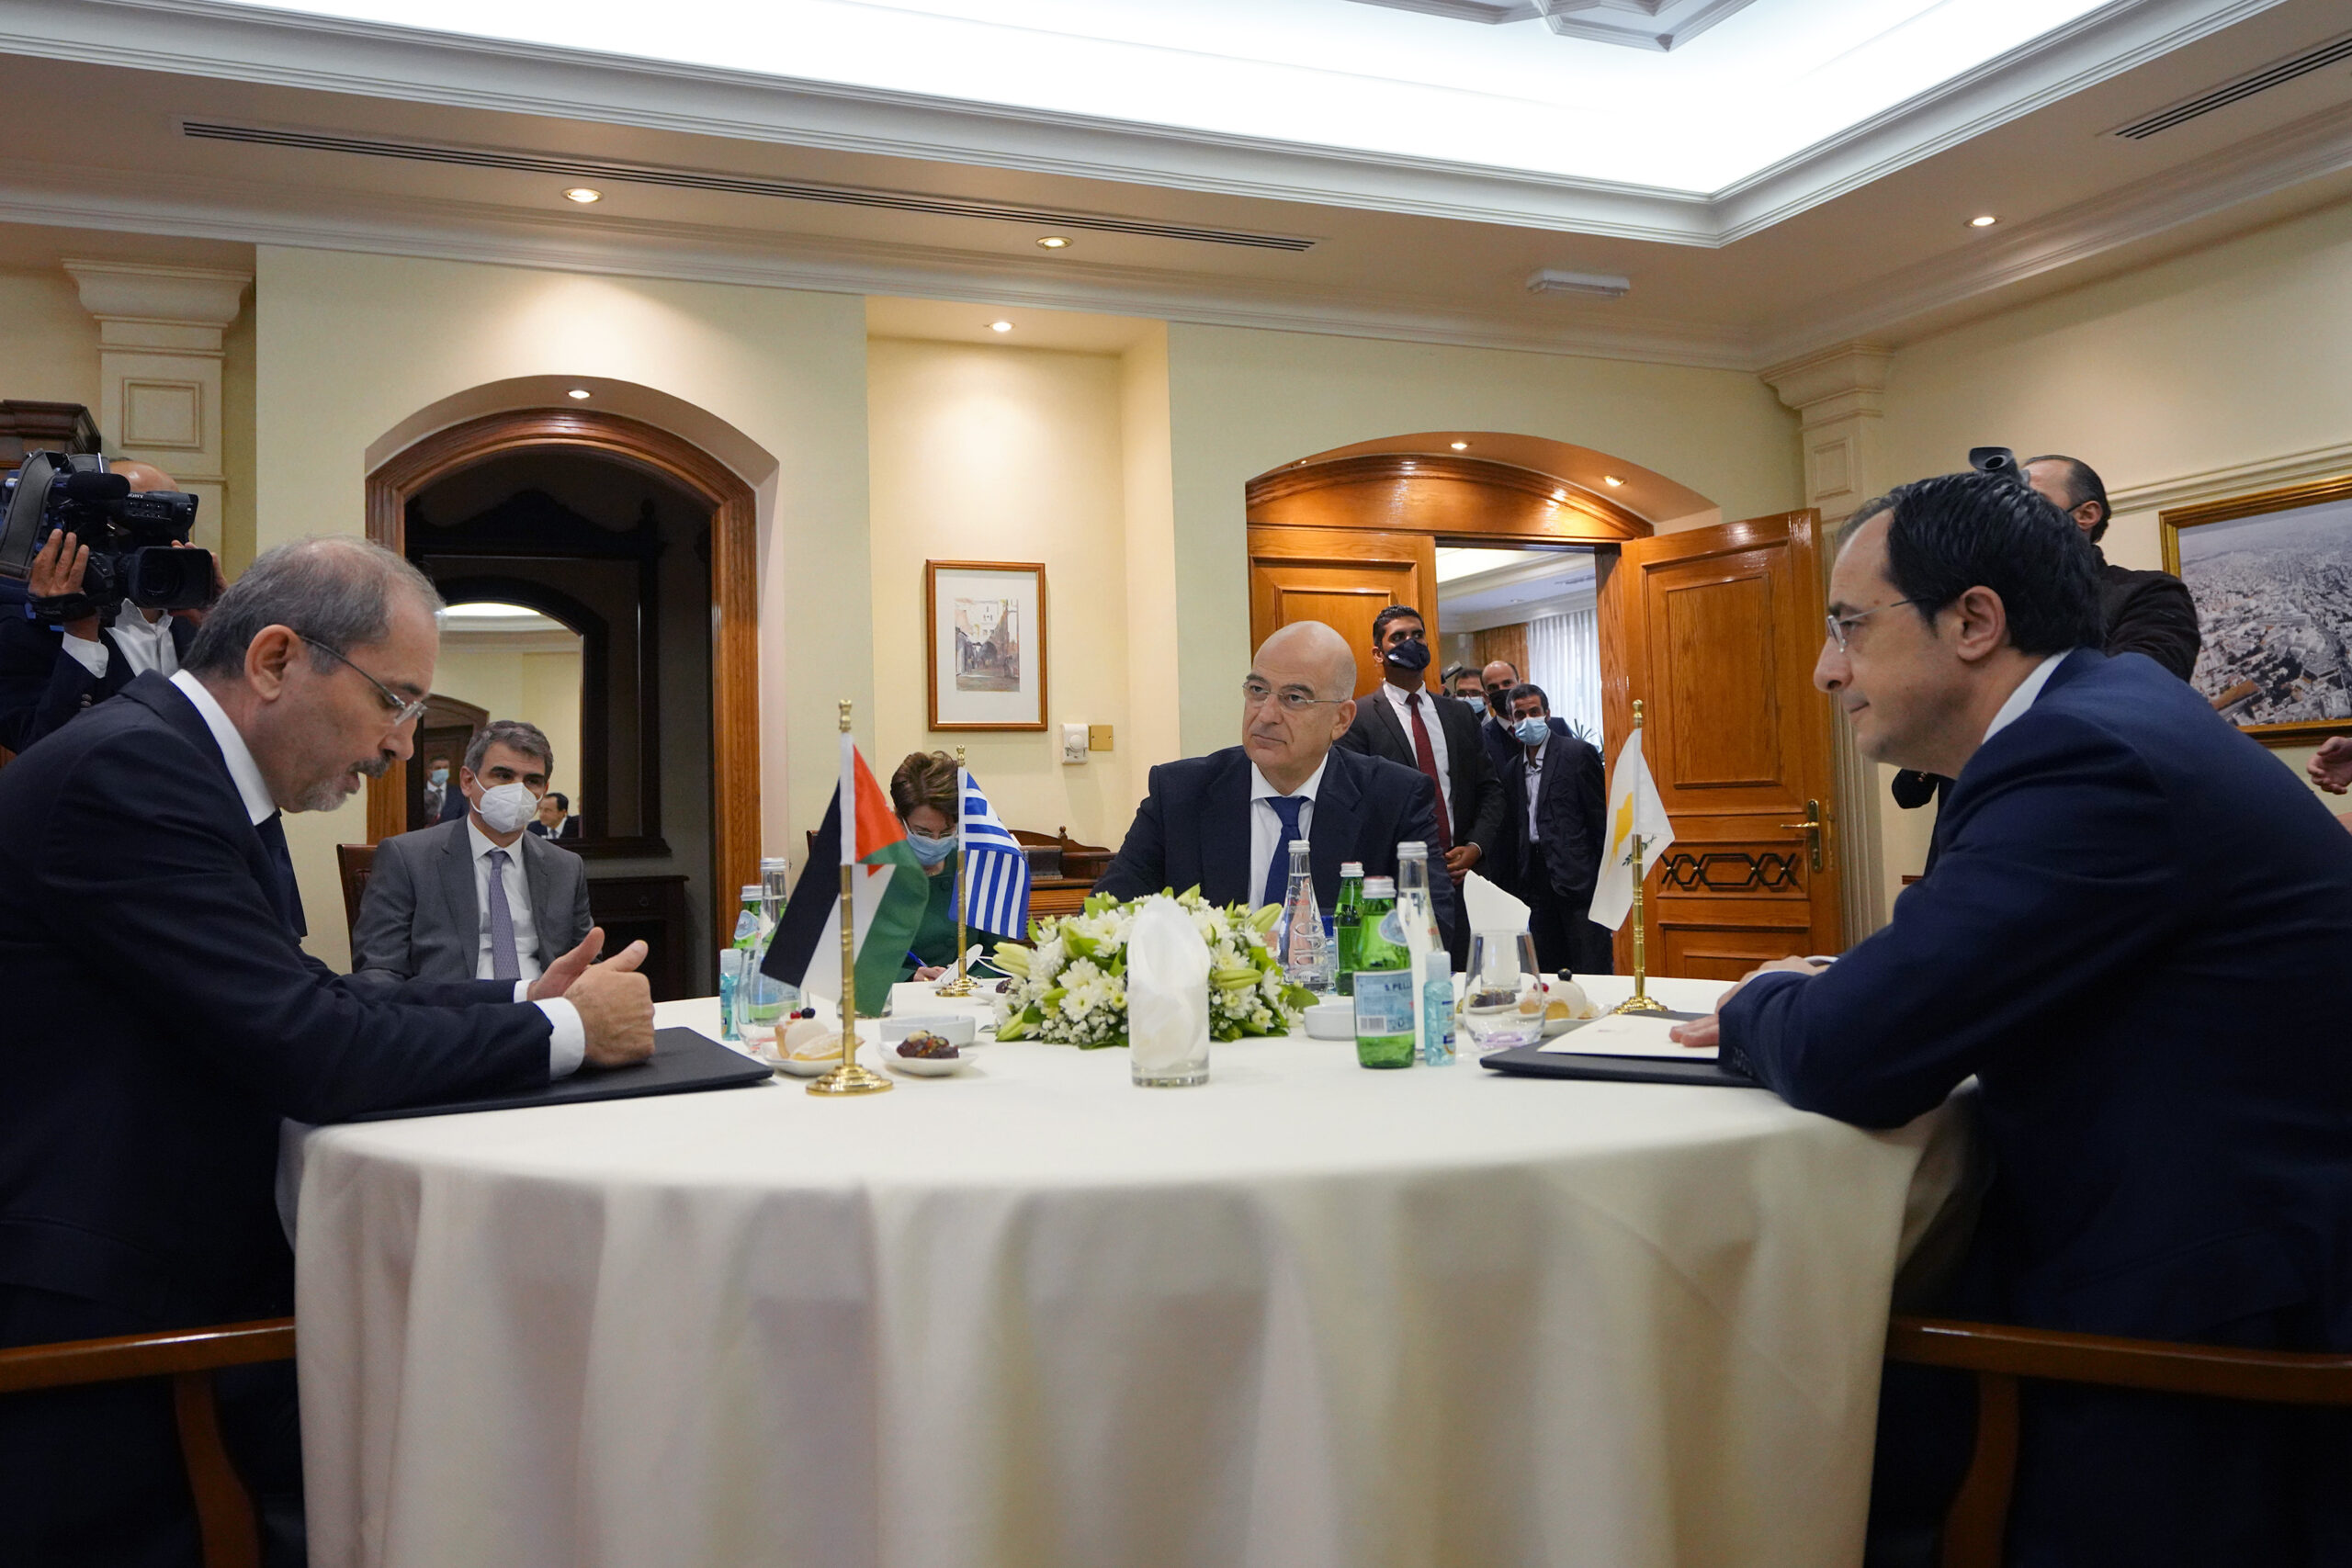 Αυθημερόν μετάβαση Υπουργού Εξωτερικών, Νίκου Δένδια, στην Ιορδανία για την τριμερή Σύνοδο Υπουργών Εξωτερικών Ελλάδας – Κύπρου – Ιορδανίας  (Αμμάν, 08.12.2020)